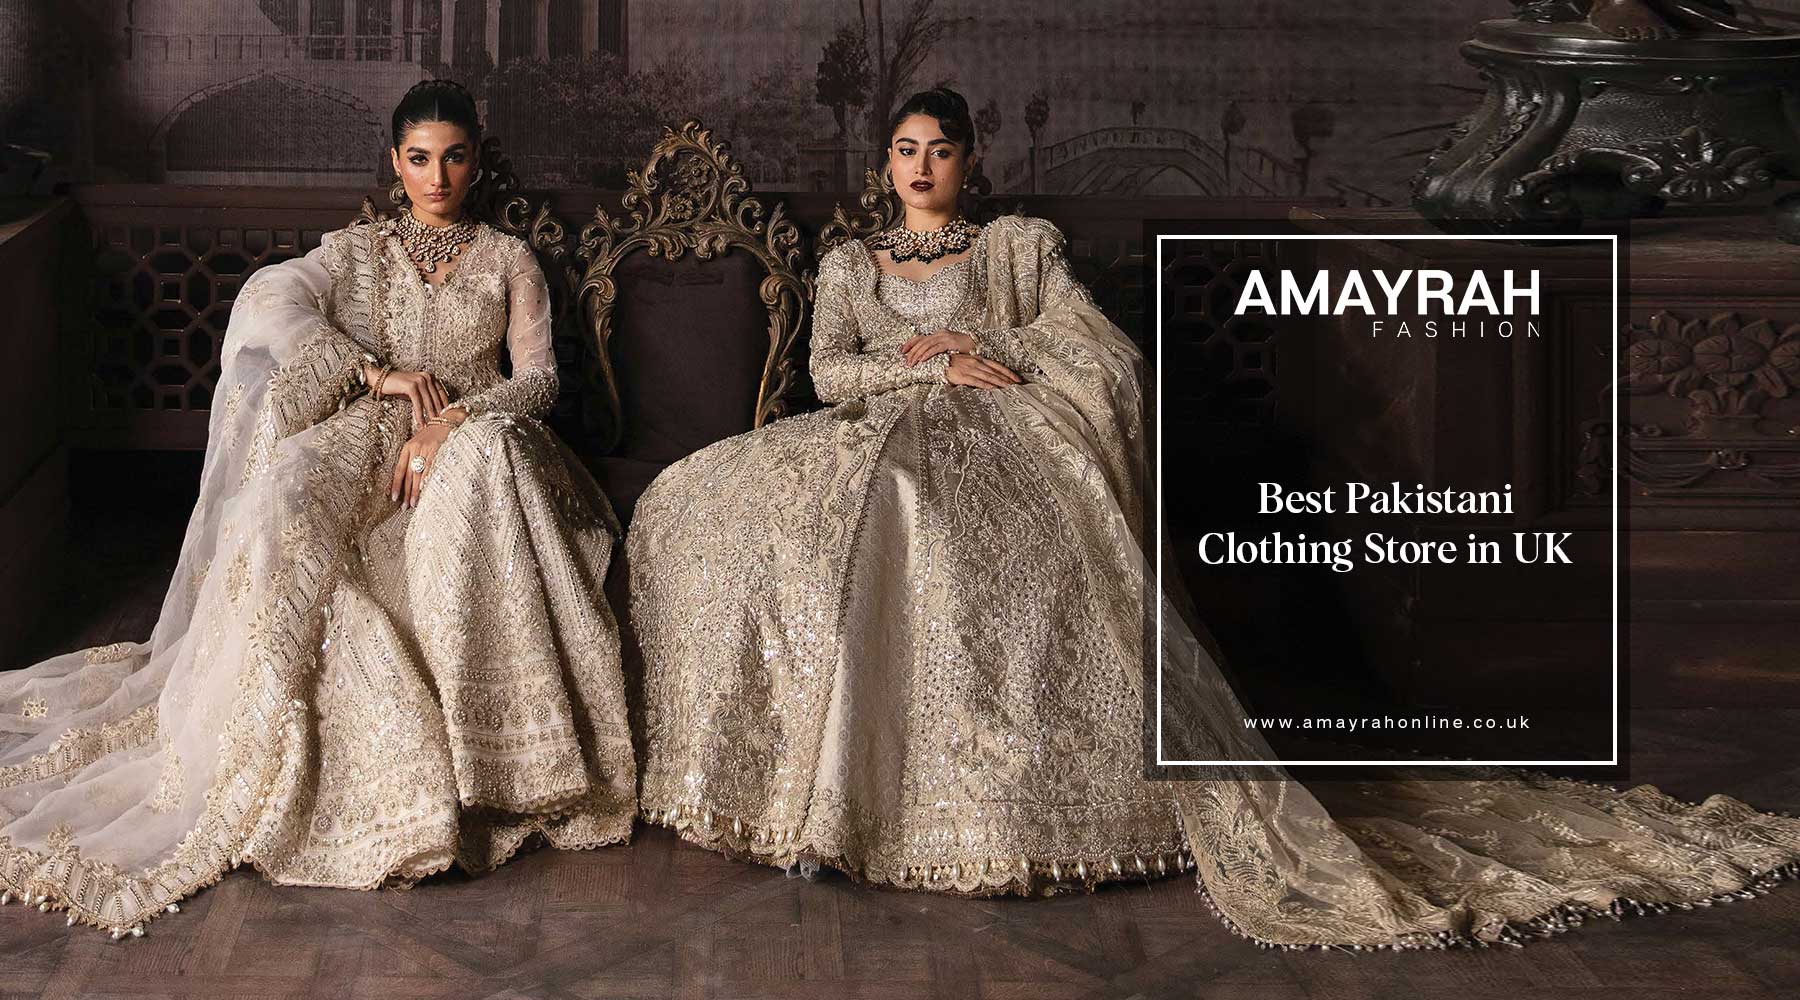 Amayrah Fashion: Elevating Pakistani Clothing in the UK